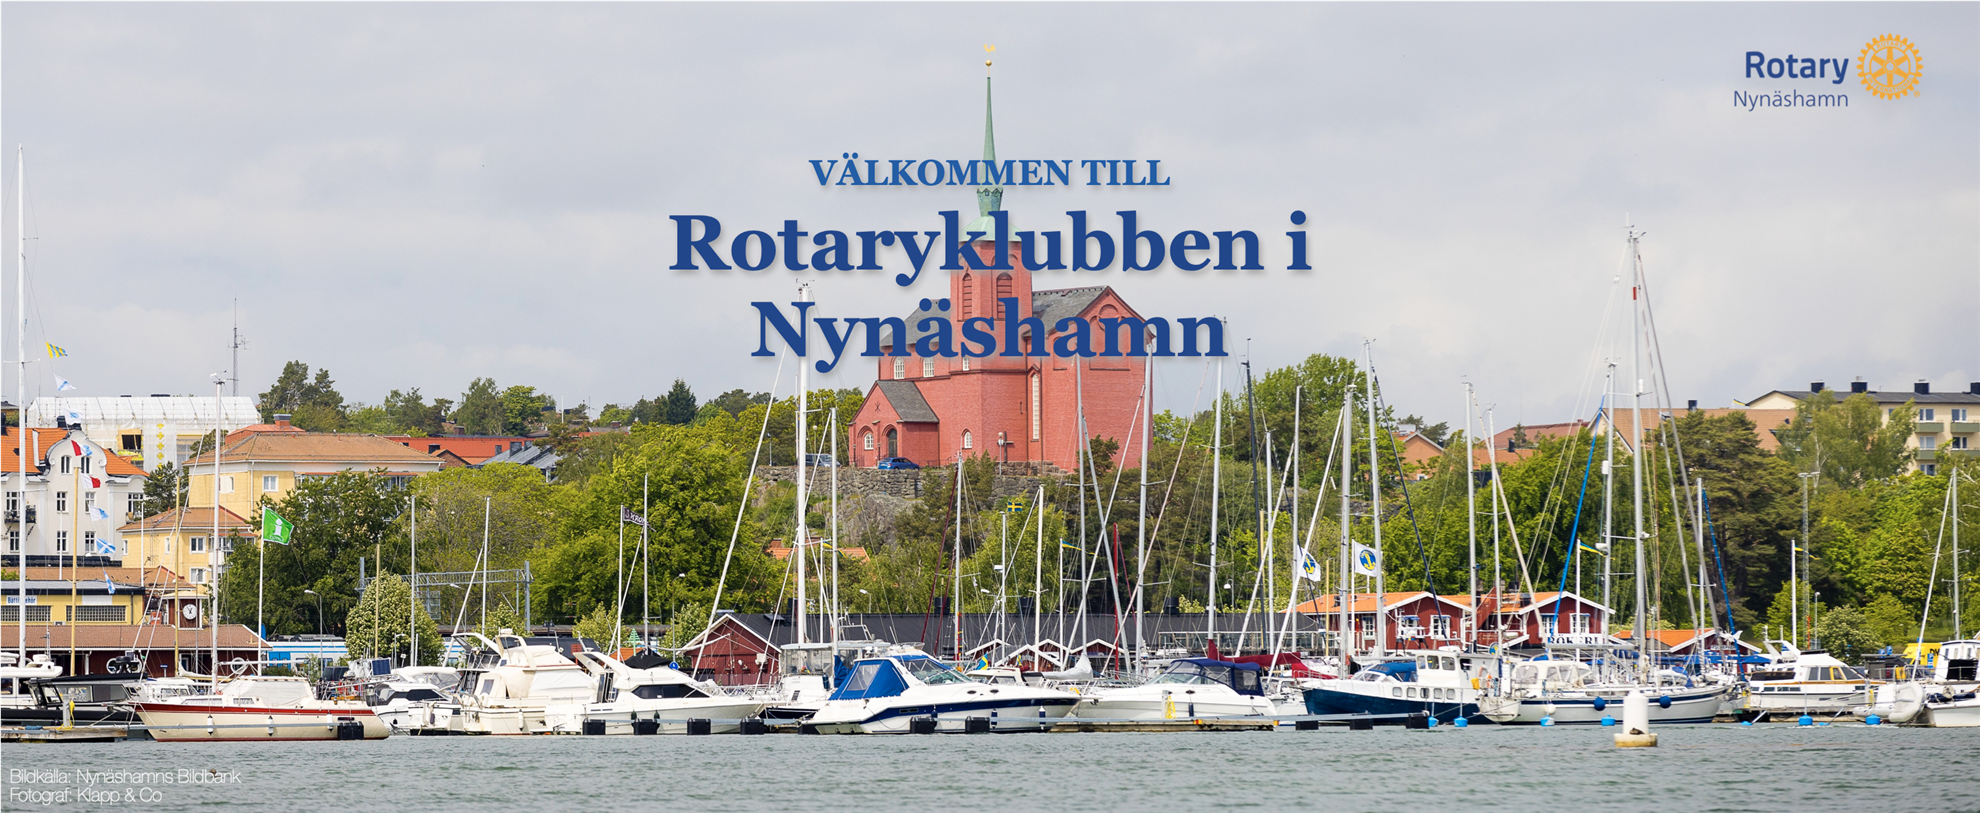 Rotary Nynäshamn